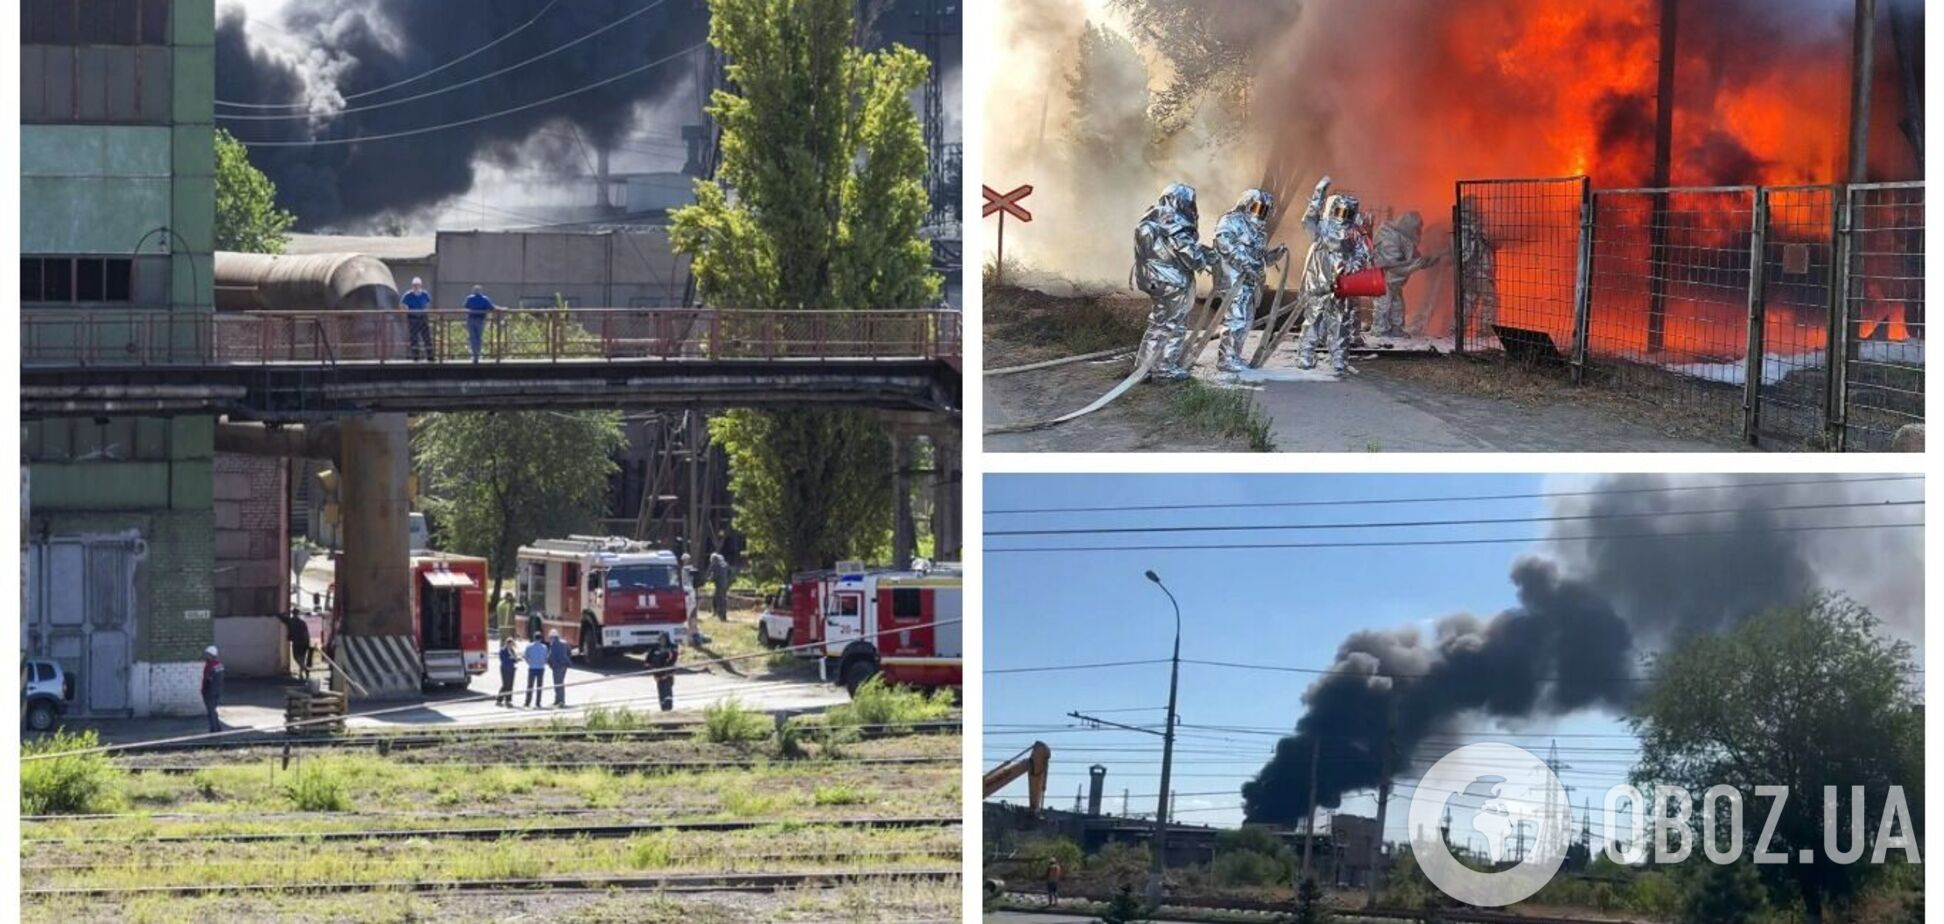 У Волгограді спалахнула потужна пожежа на заводі 'Красний Октябрь', піднялася стіна вогню і диму. Відео